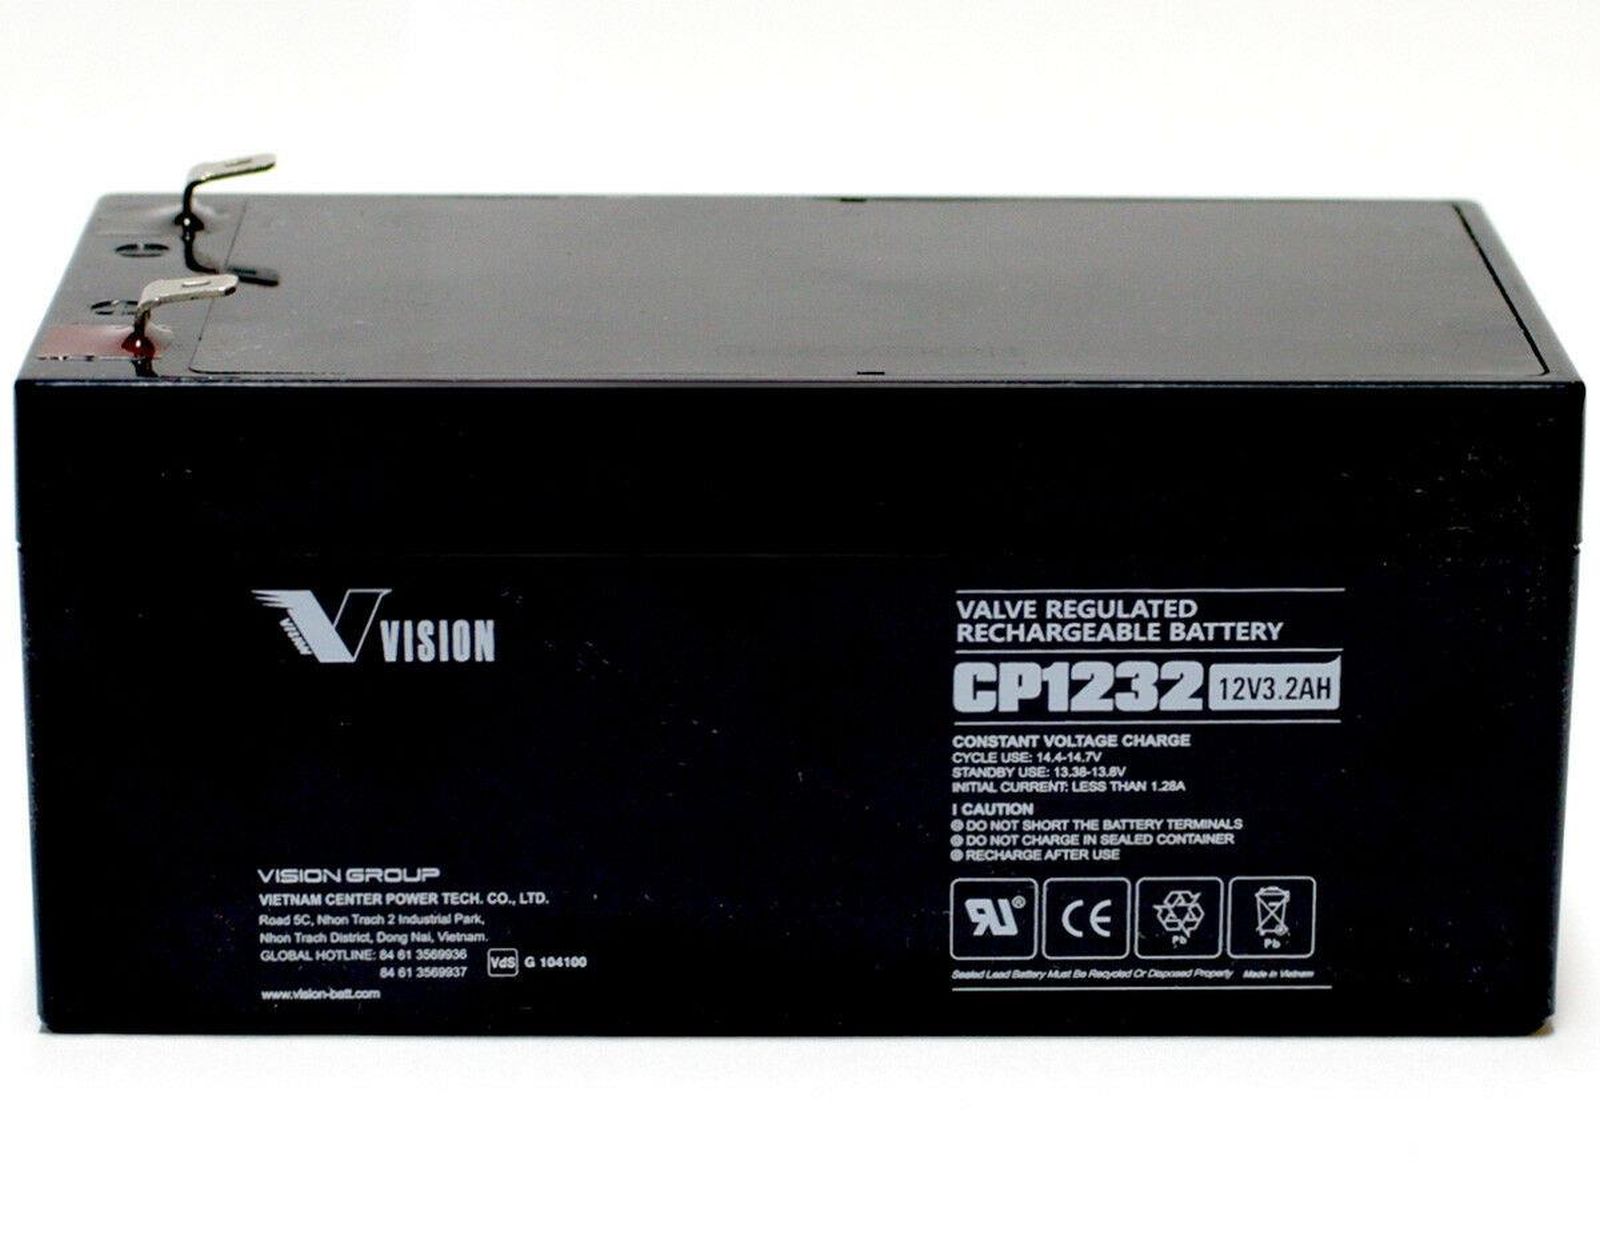 Akku Nachladbare versiegelte Blei-Gel Batterie 12V/3.2AH, 134x67x61mm 67mm über Pole